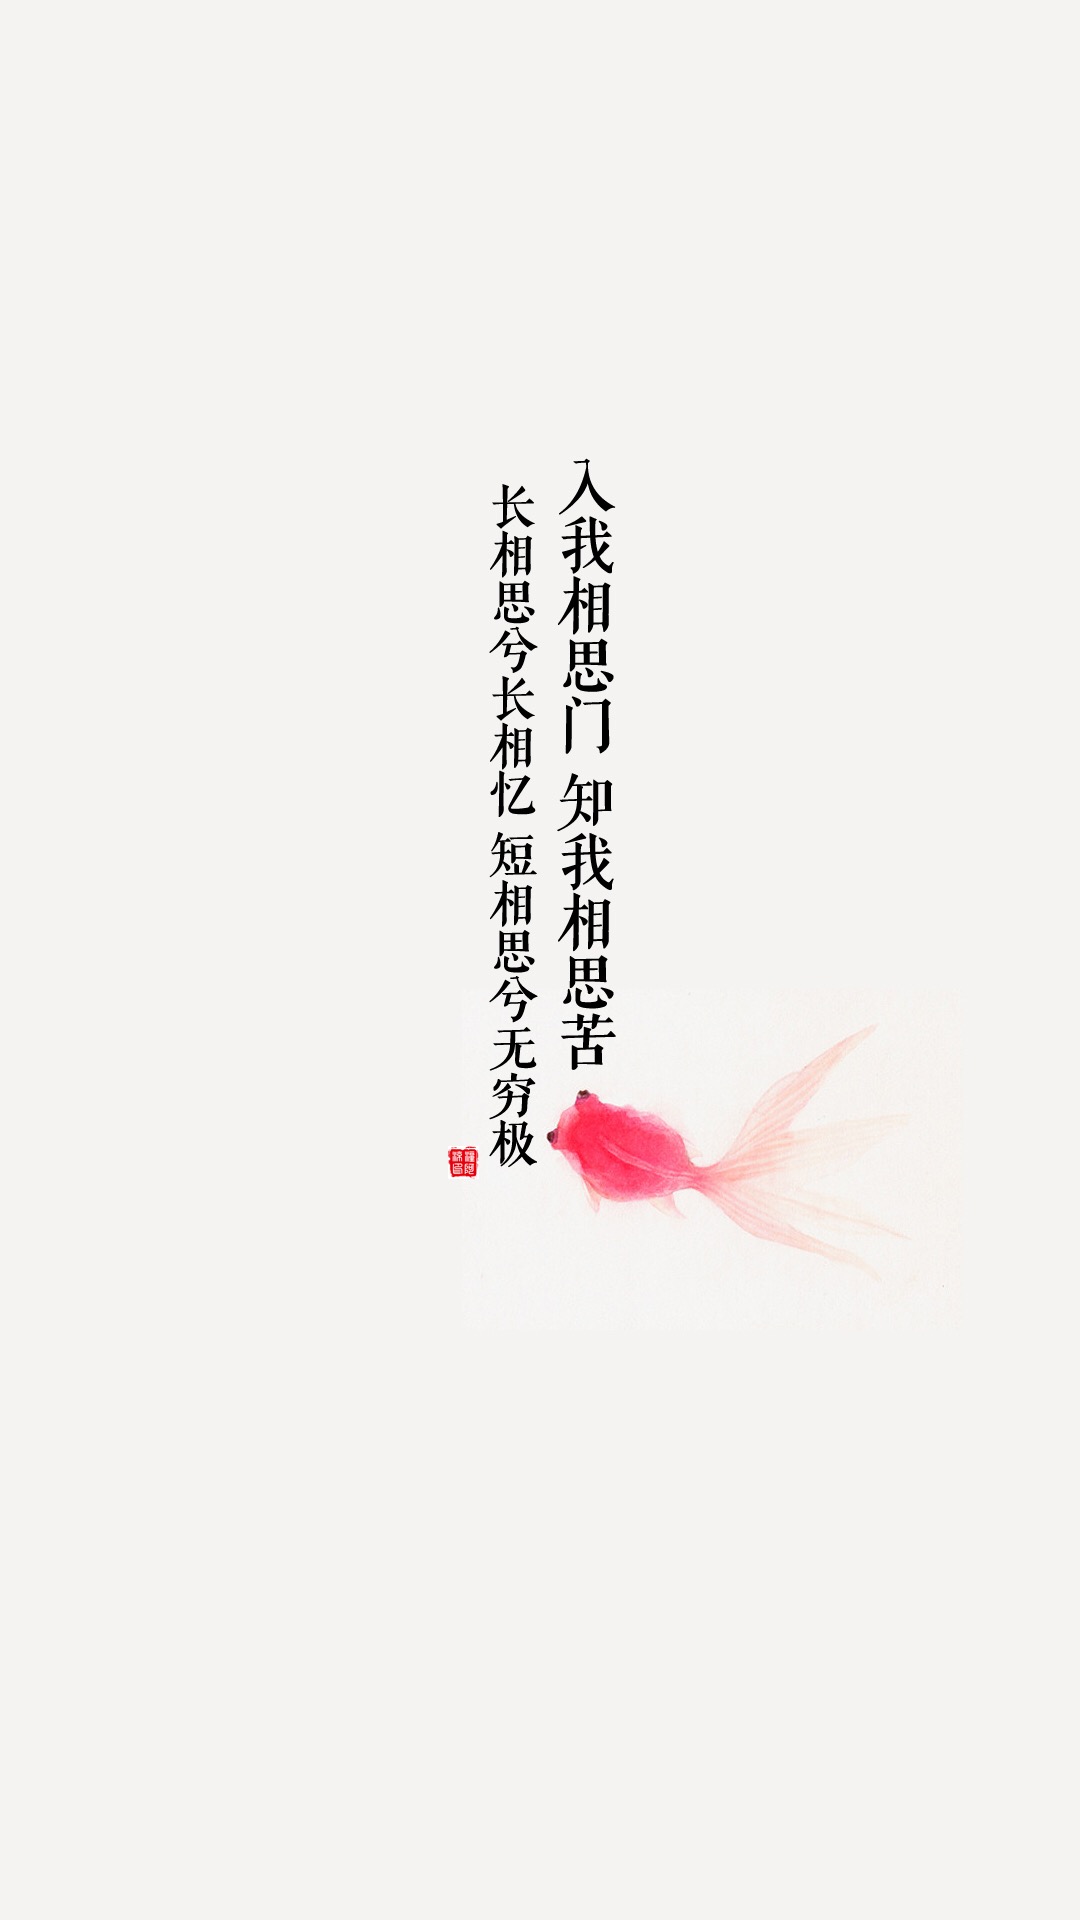 古诗词手机壁纸高清 高清淡雅中国风壁纸(2)